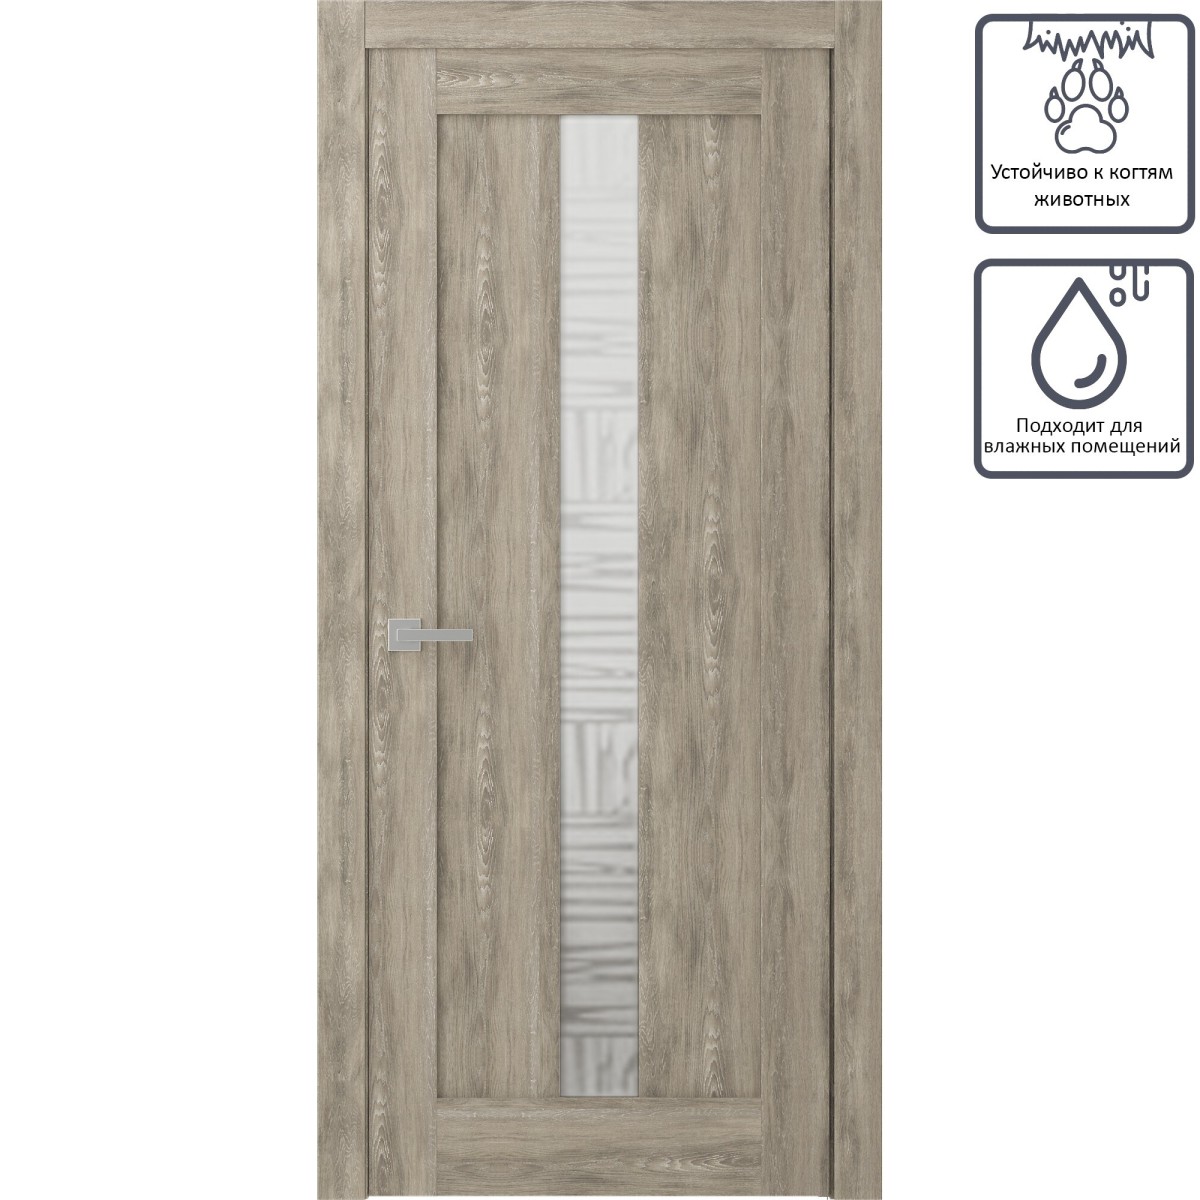 Дверь межкомнатная остеклённая Челси 90x200 см, экошпон, цвет дуб медовый